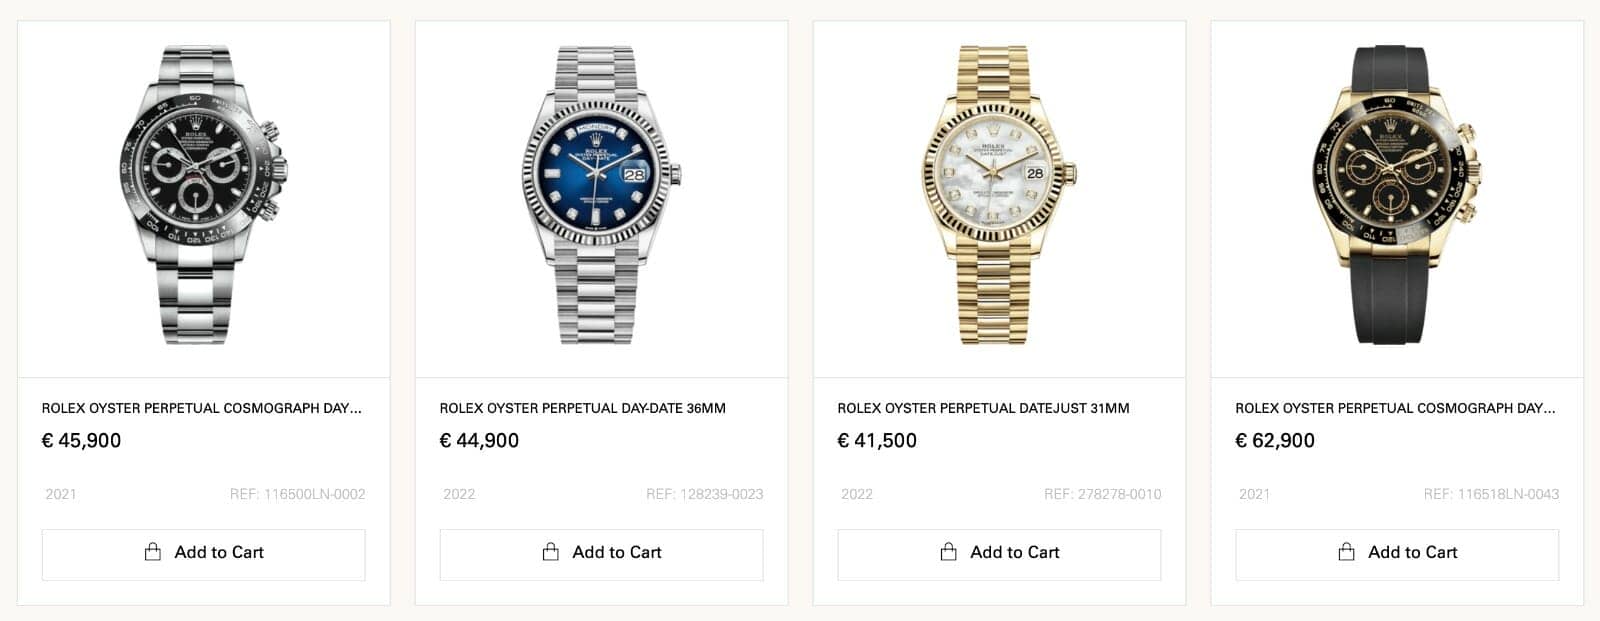 Watches World offre, tra l'altro, i famosi Rolex che puoi acquistare in fiat ma anche con criptovalute, tra cui Bitcoin